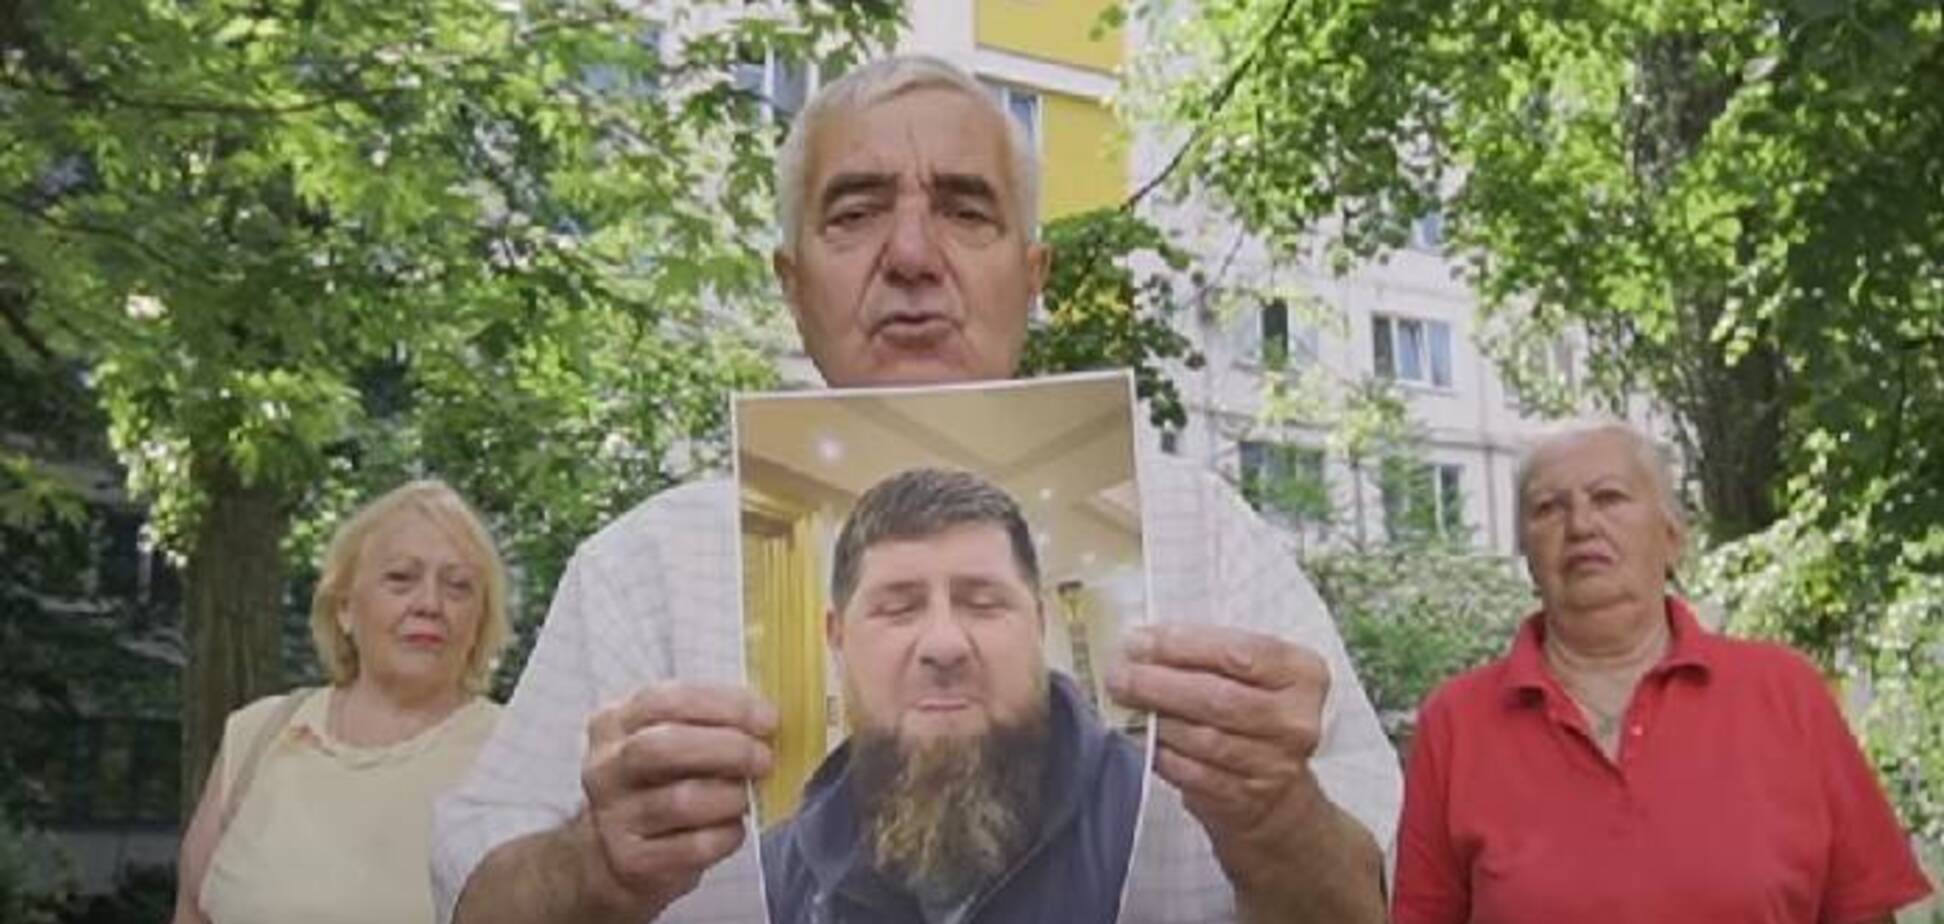 Украинское движение 'подразделение Байдена' выложило третий видеоролик, 'посвящённый' Кадырову. Видео